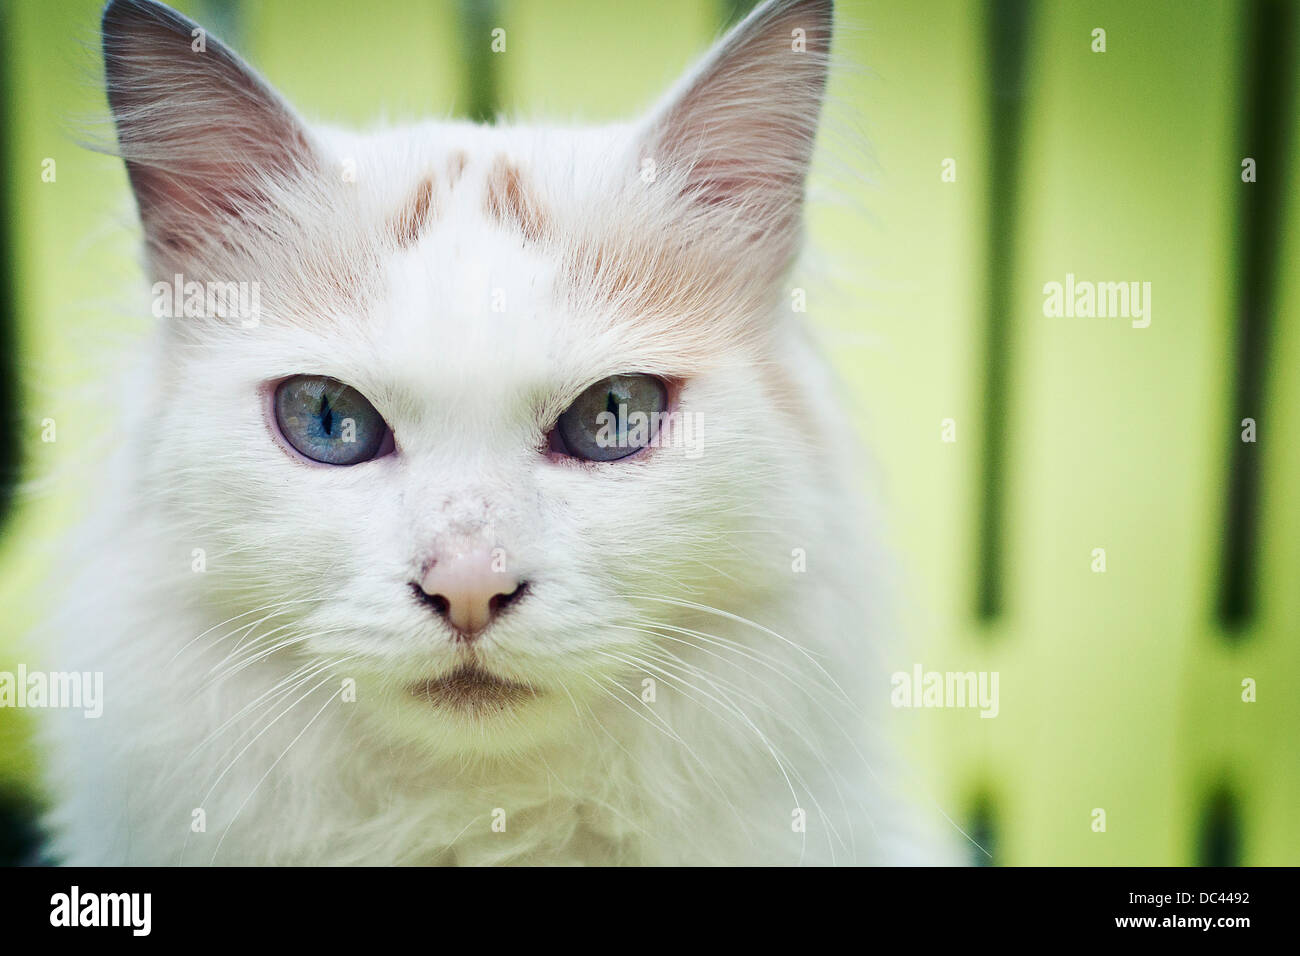 Un chat blanc aux cheveux longs avec des yeux bleus perçants sur fond vert. Banque D'Images